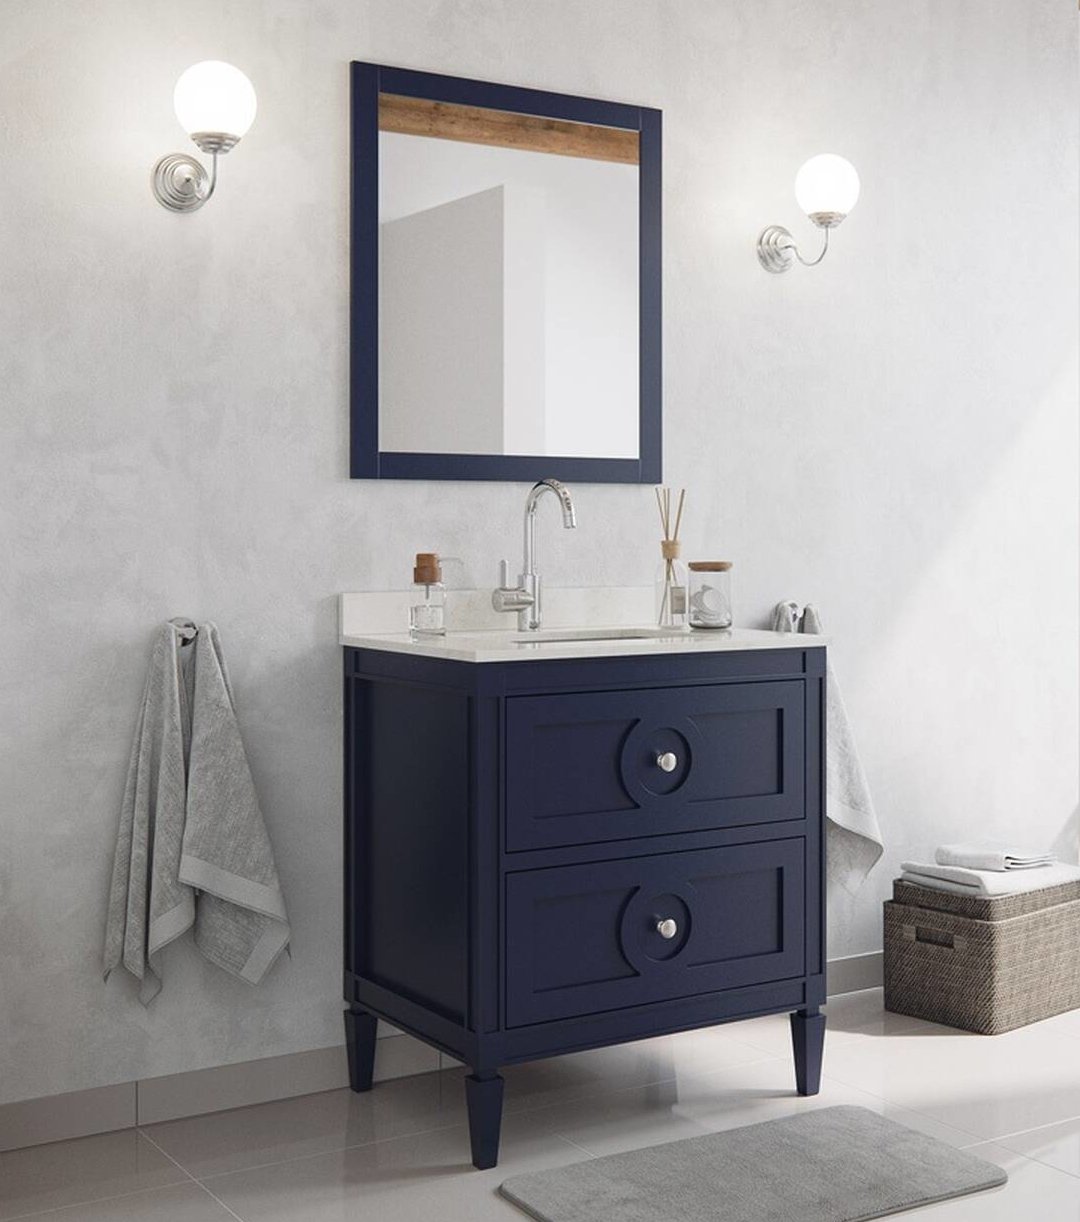 Exklusives Badmöbel Set Landhausstil Massivholz in blau lackiert Spiegel blauer Waschtisch mit Waschbecken 76 cm hochwertig elegantes Badezimmer